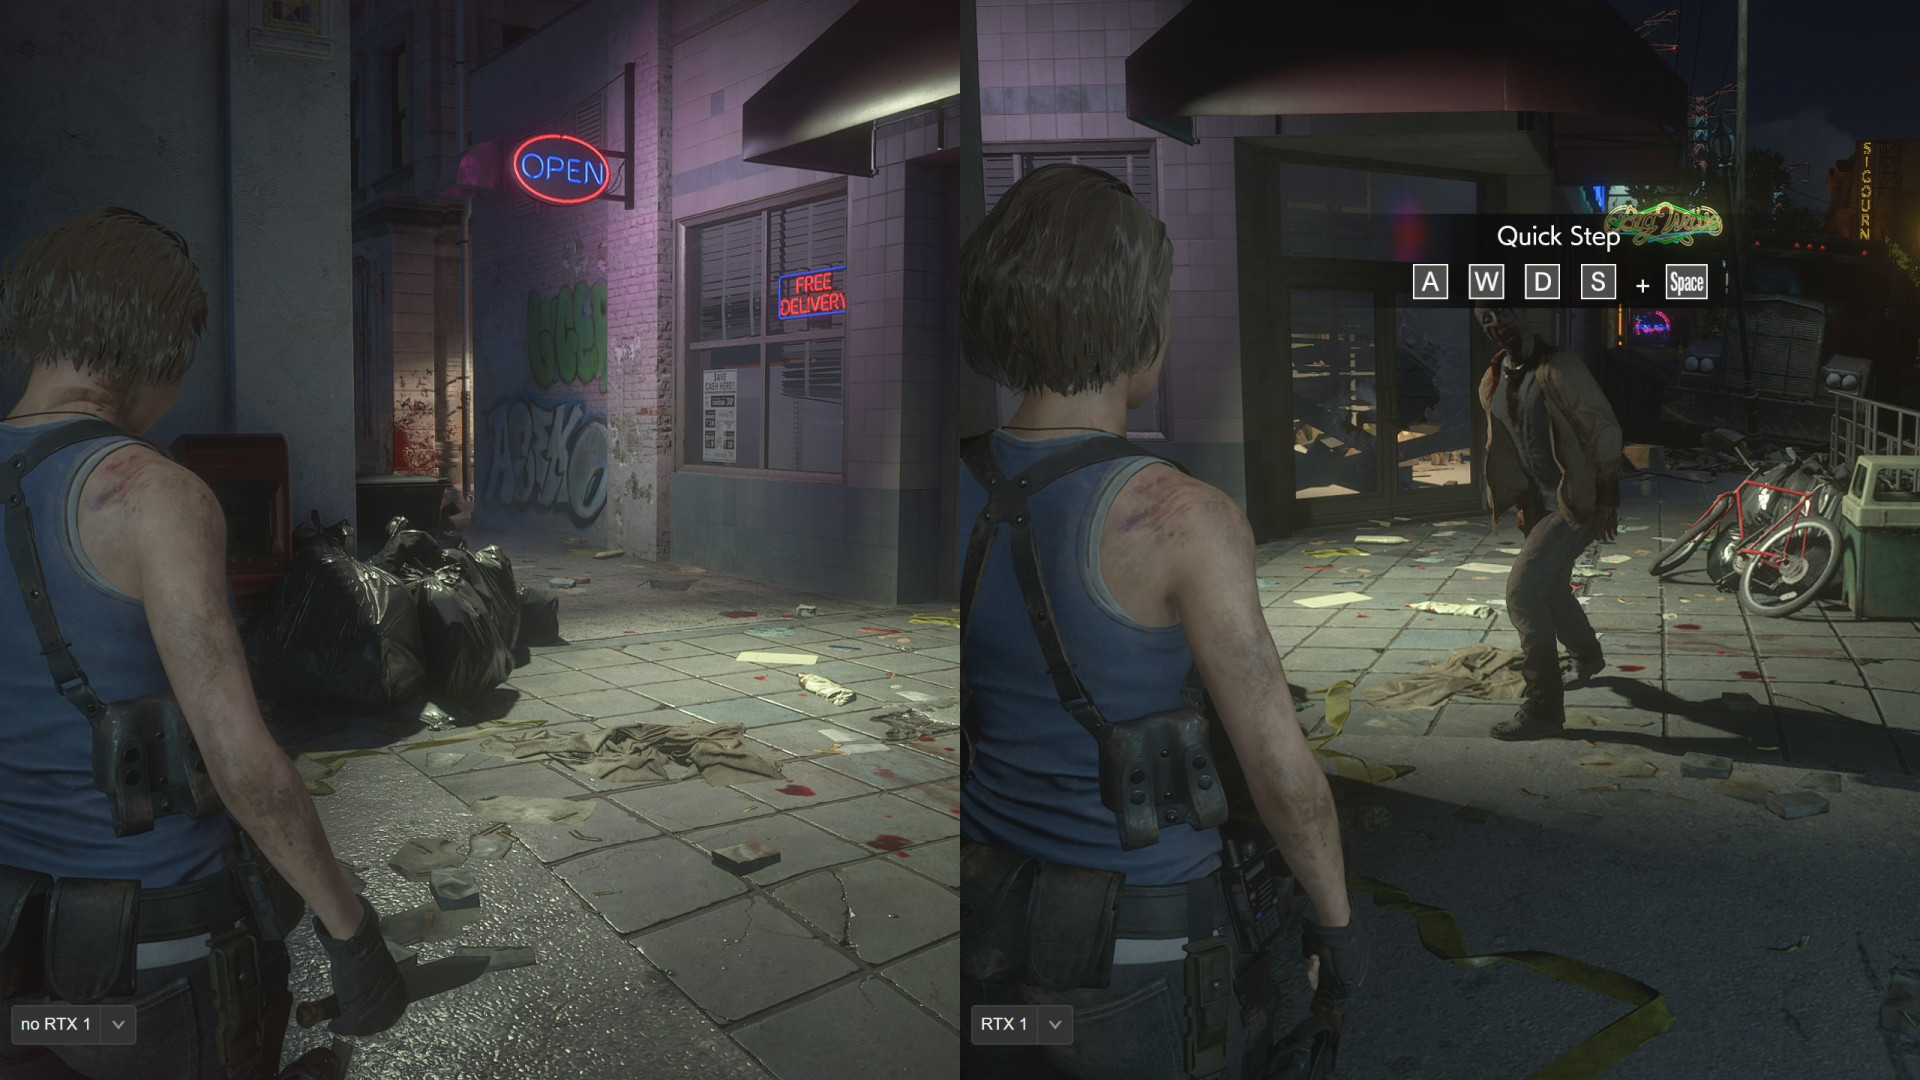 Ray Tracing no Resident Evil 7, 2 e 3 MANDOU BEM! Veja nossos comparativos